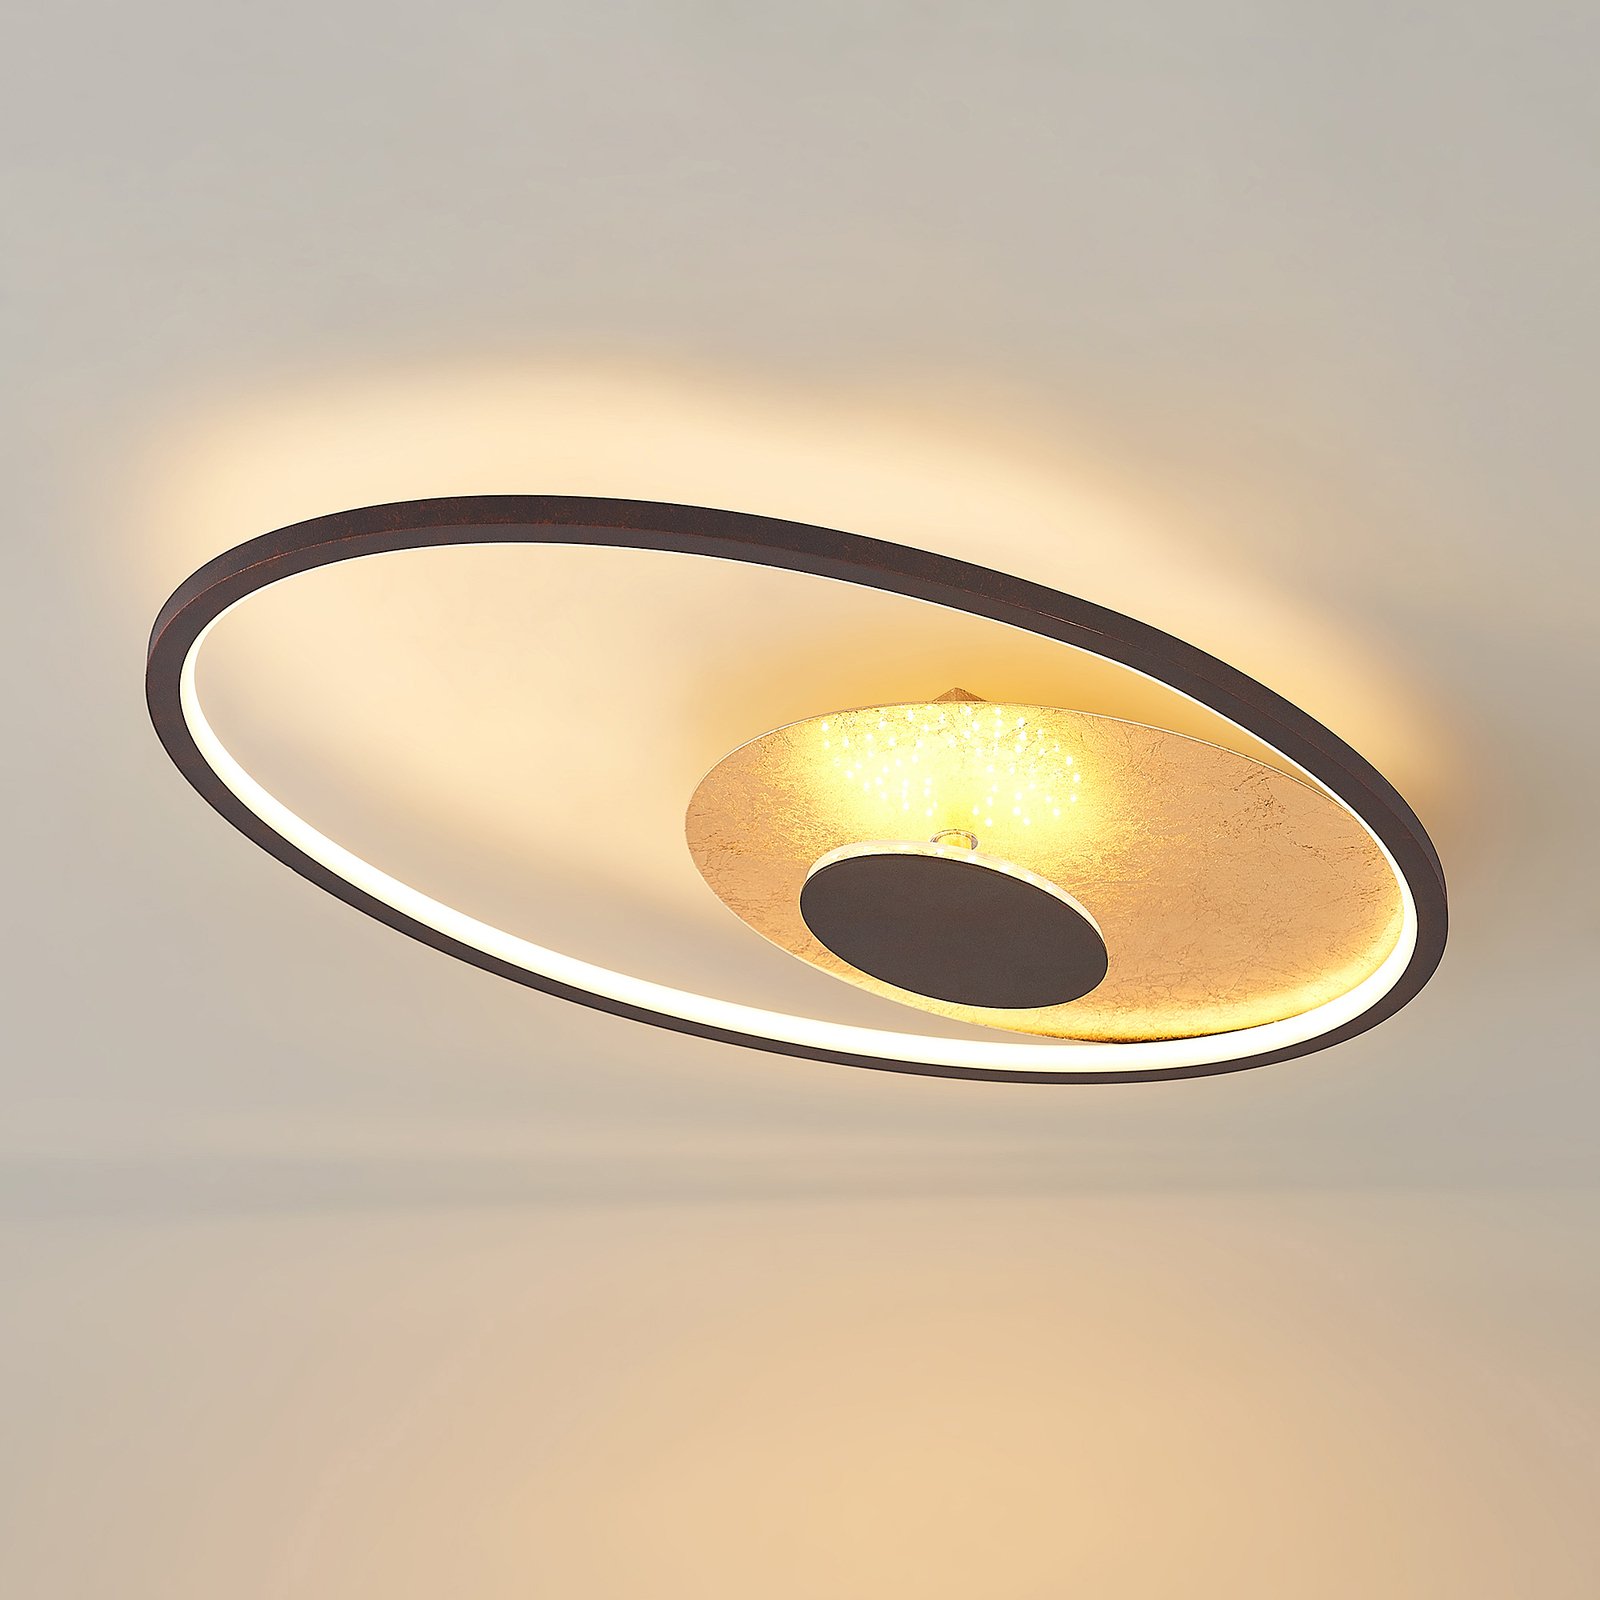 Lindby Feival LED ceiling light, 61 cm x 36 cm